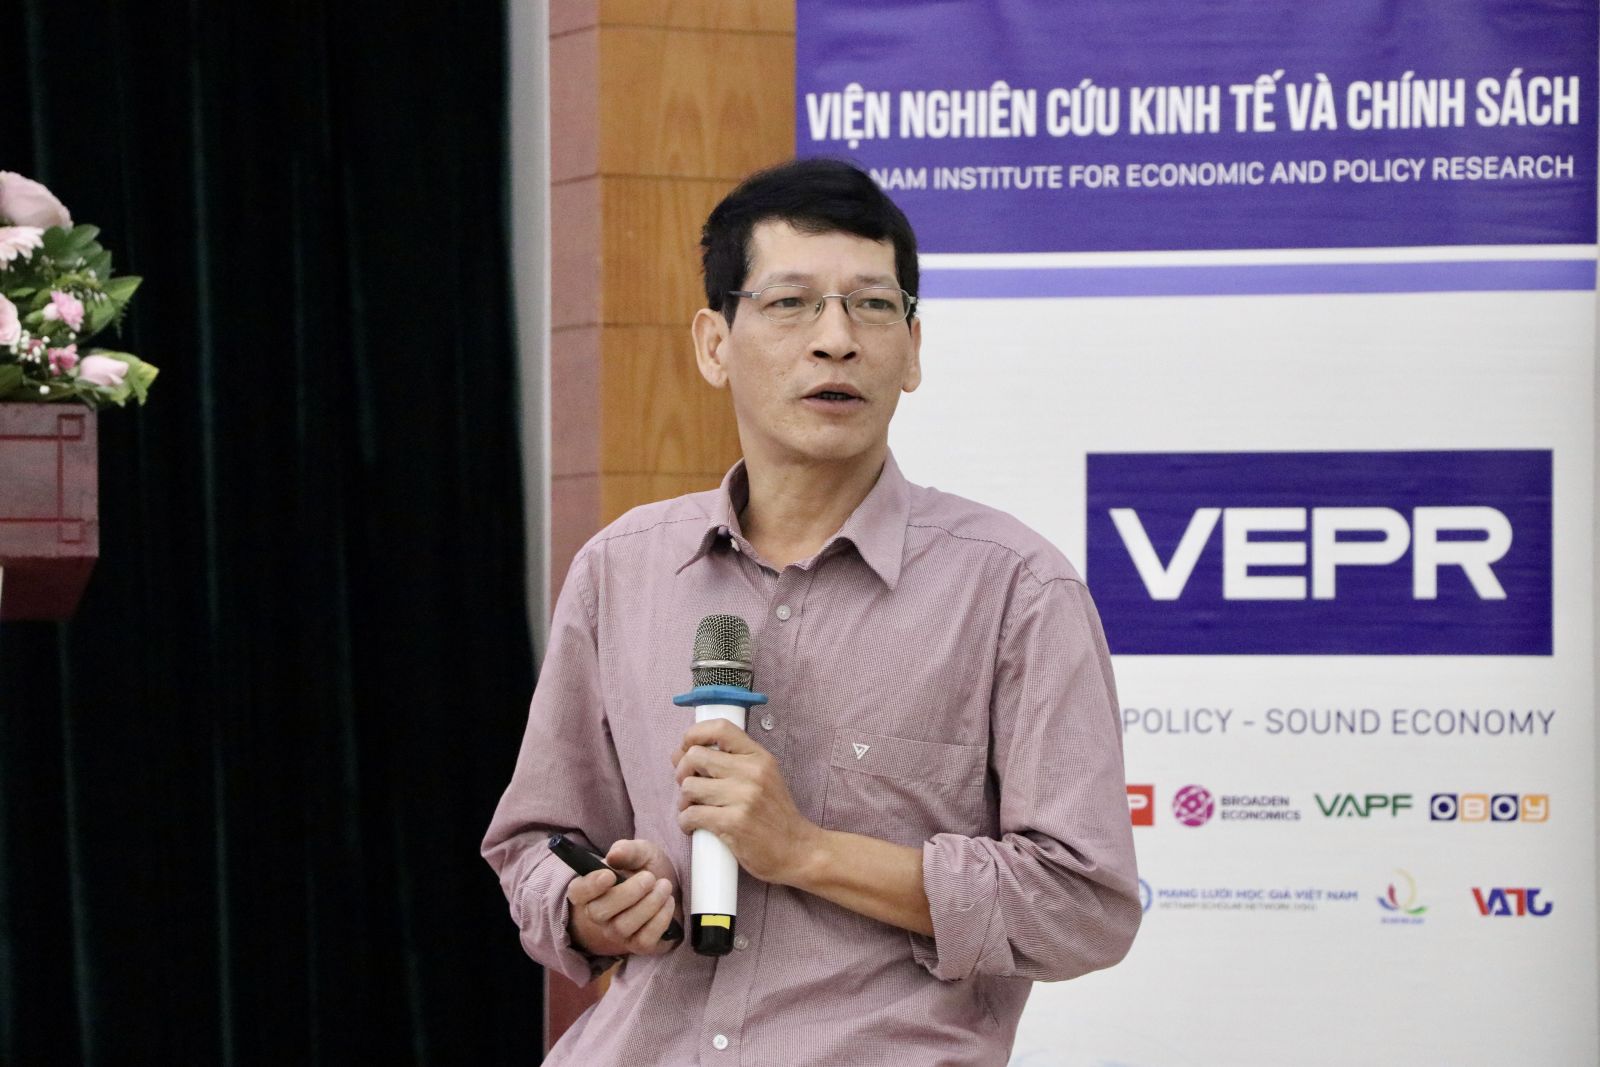 TS. Nguyễn Tiến Dũng, Đại học Kinh tế, Đại học Quốc gia Hà Nội | Ảnh: VEPR